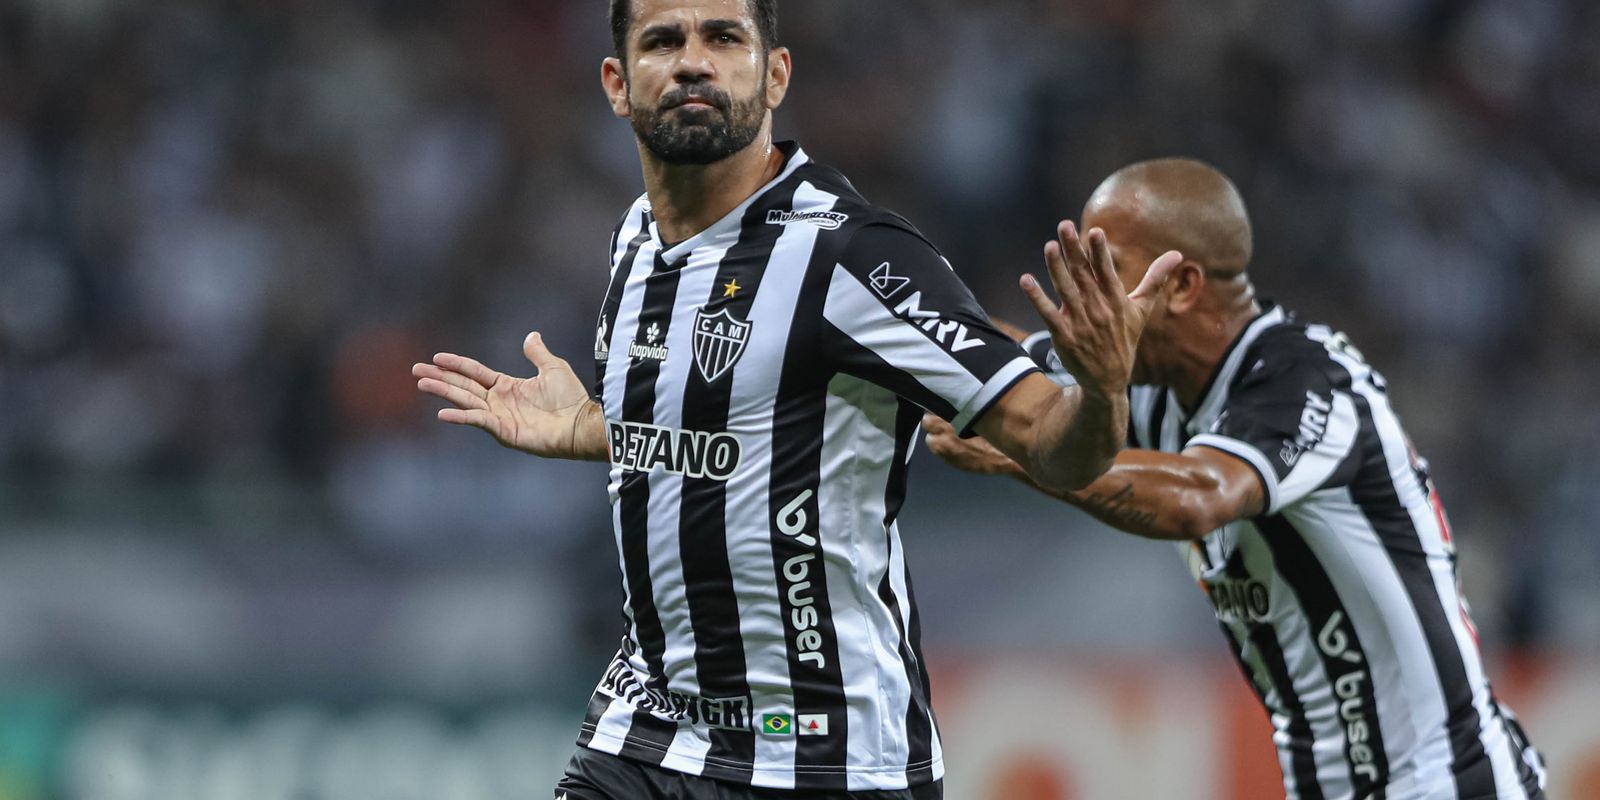 Clube Atlético Mineiro - ⚪⚔⚫ Hoje não posso, tem jogo do #Galo